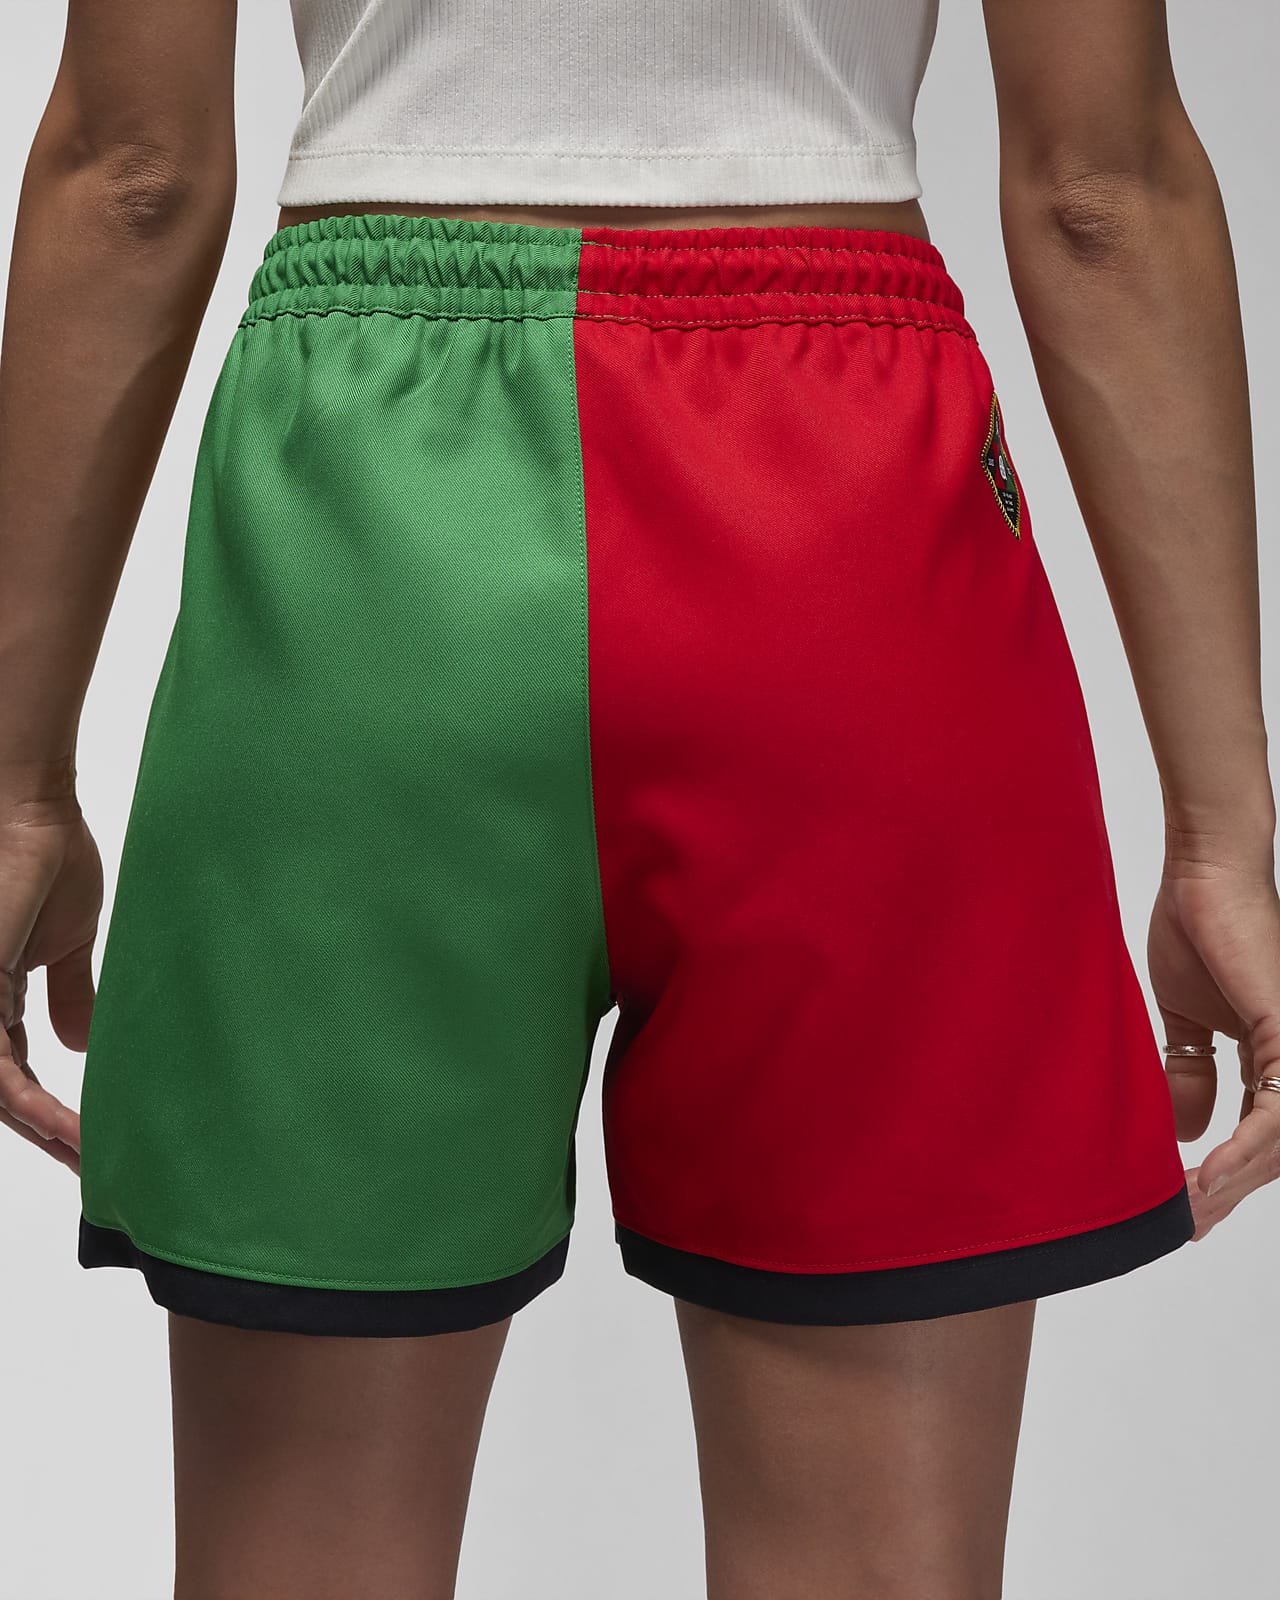 Jordan Quai 54 Women's Woven Shorts. Nike LU